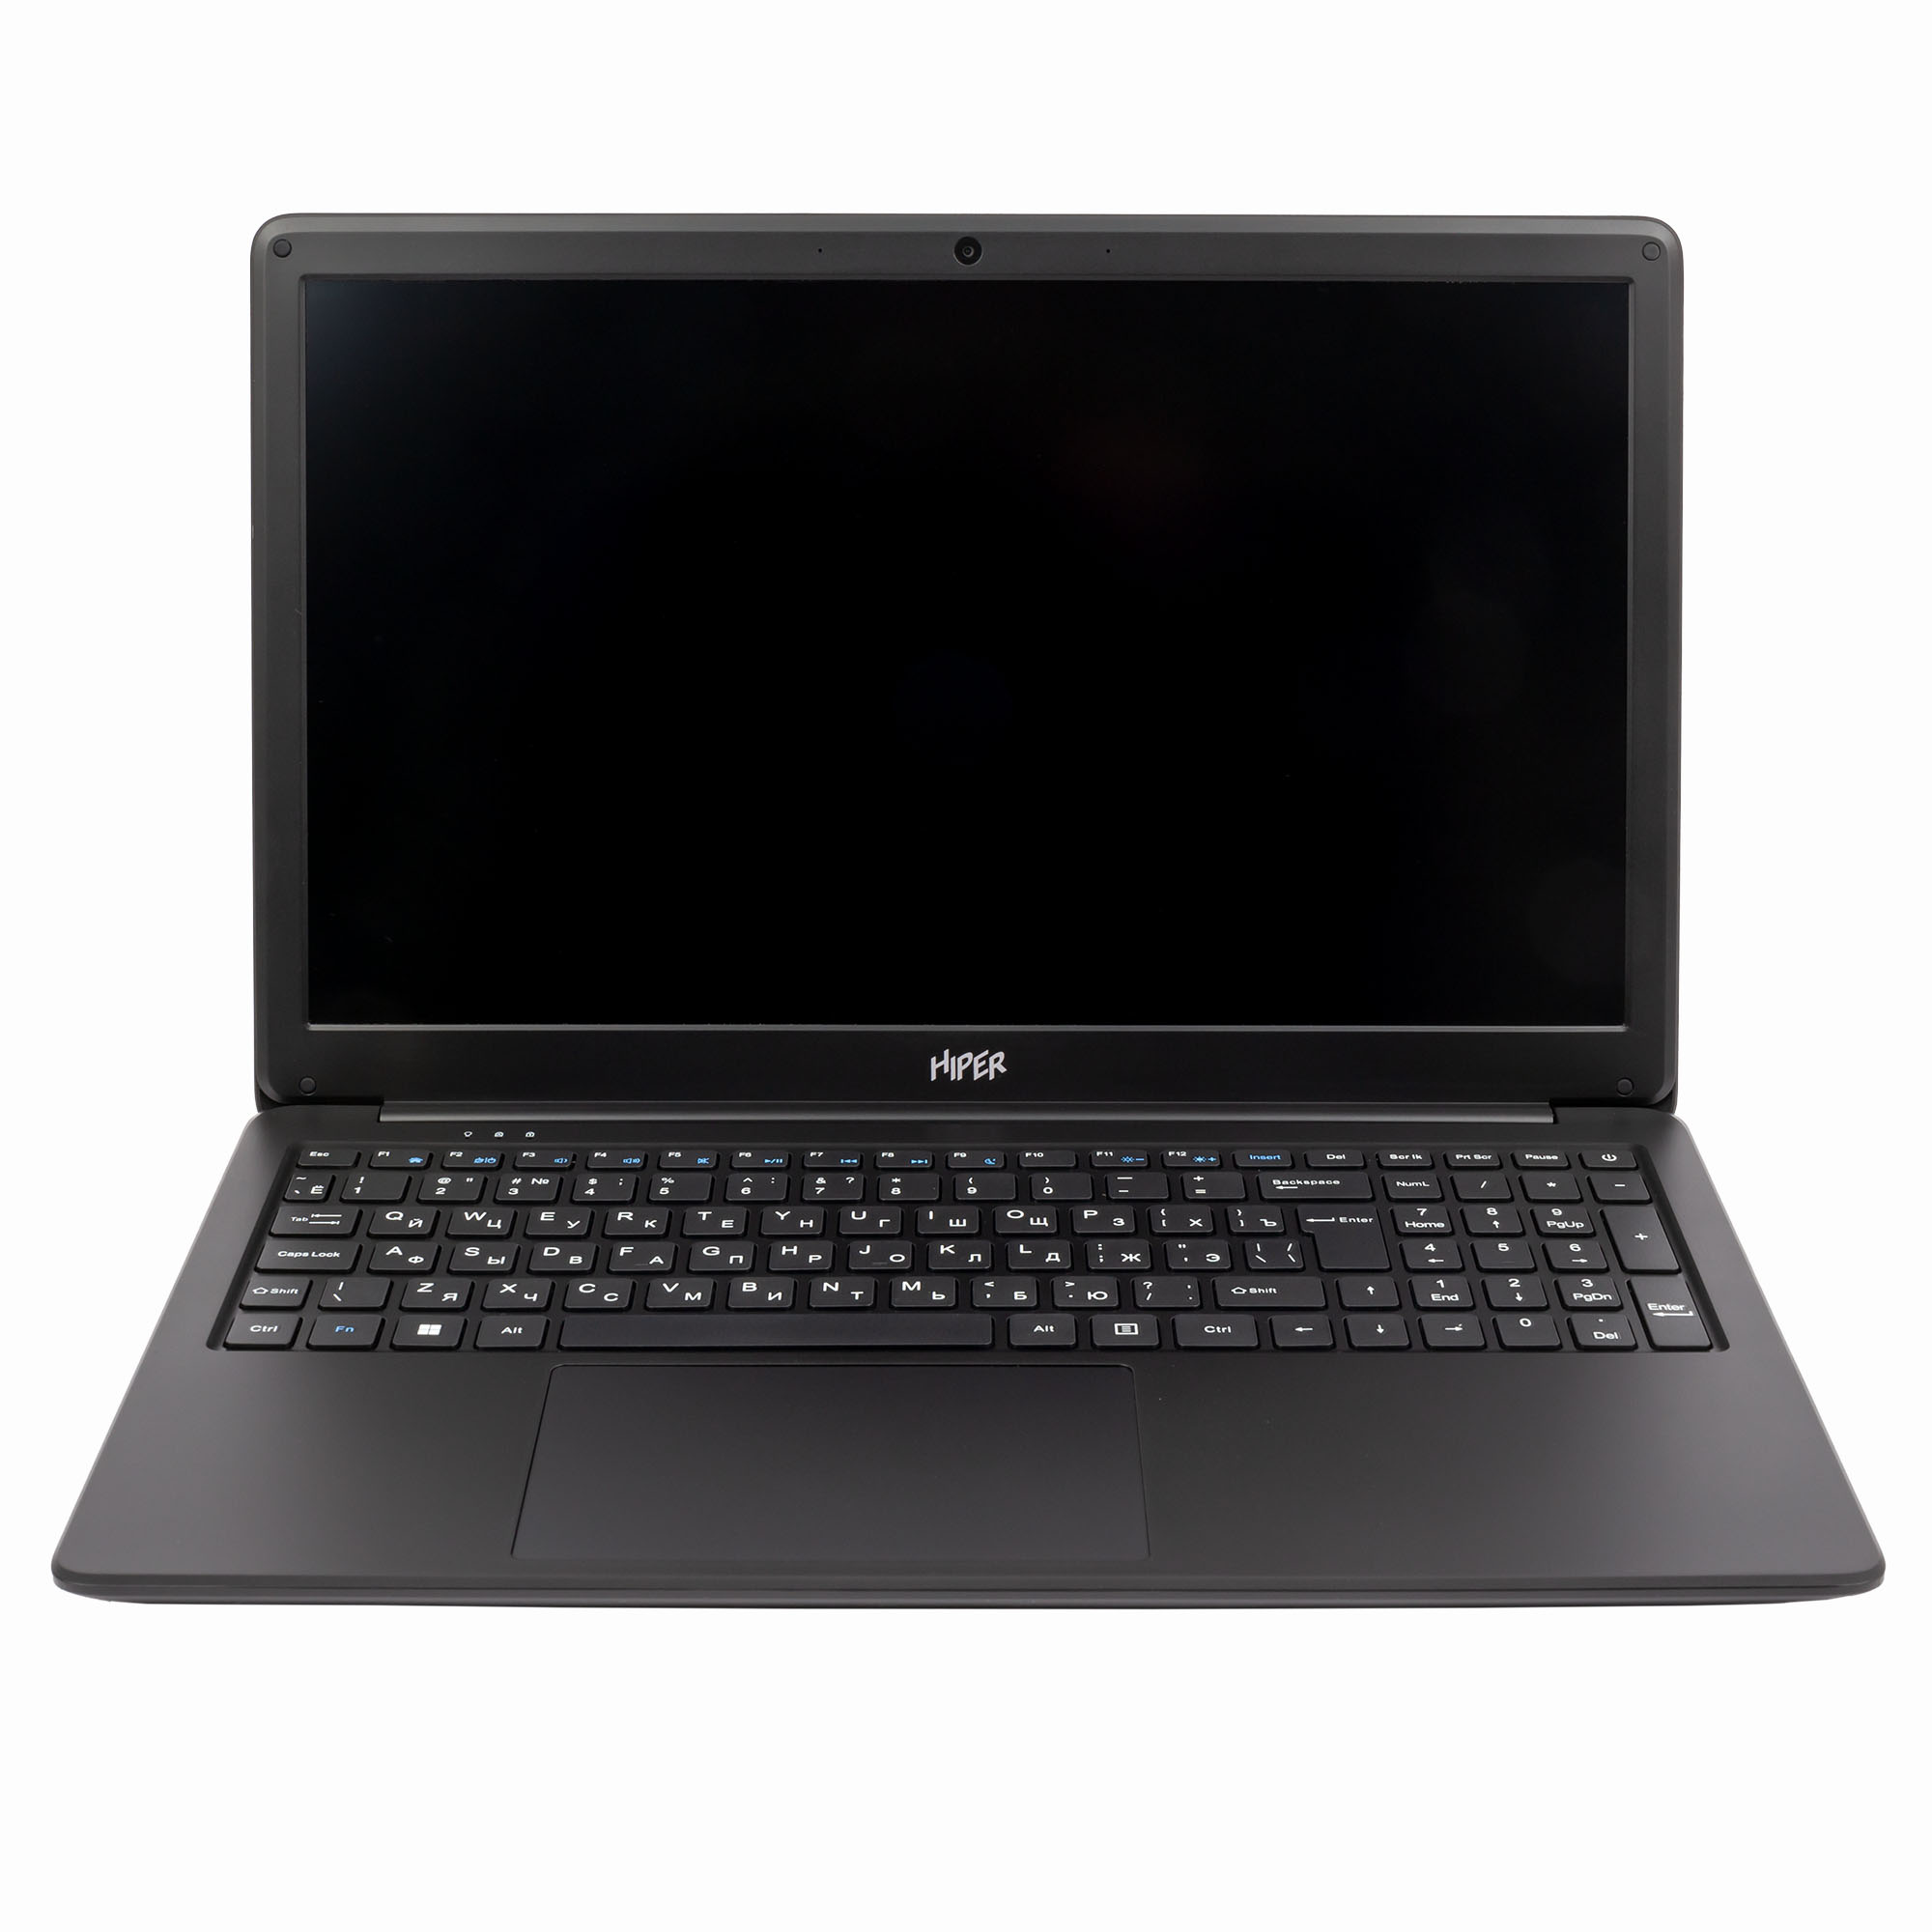 Ноутбук Hiper WorkBook N15RP 15.6" IPS 1920x1080, AMD Ryzen 3 3250U 2.6 ГГц, 8Gb RAM, 256Gb SSD, W10Pro, черный (N15RP93WI)